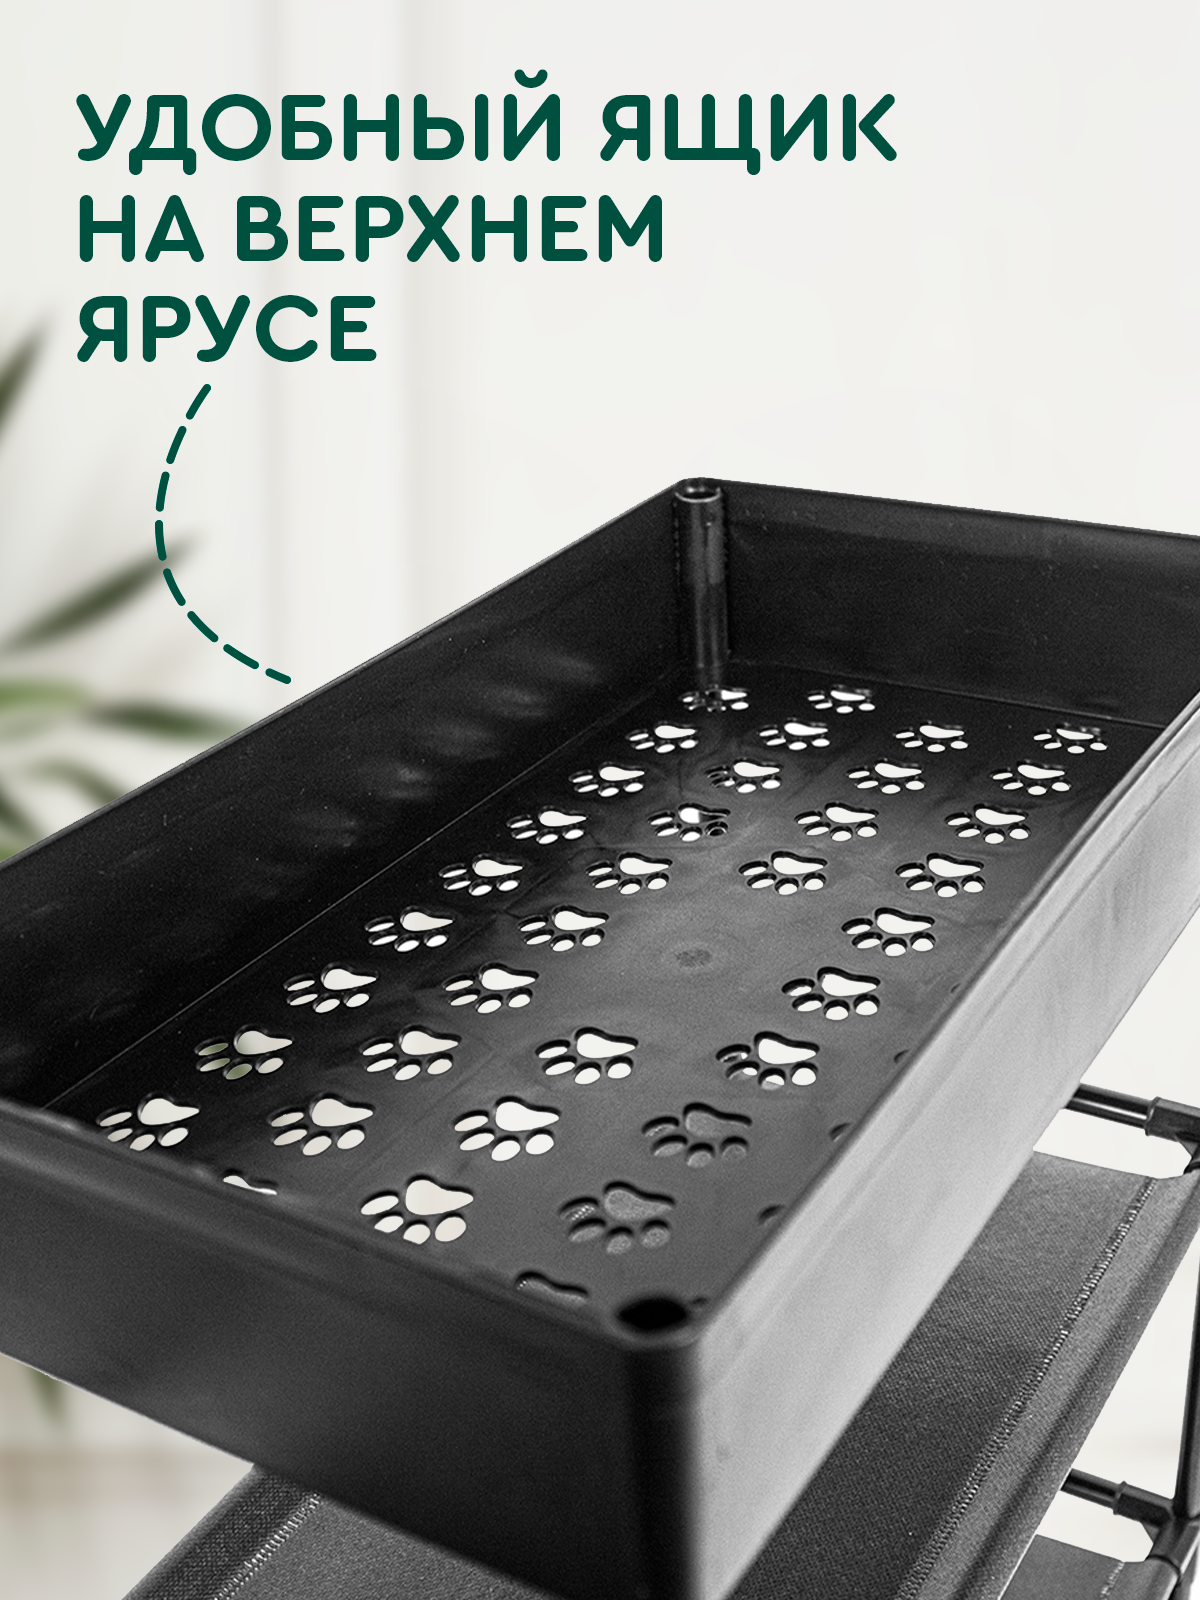 Стеллаж (3 полки и 1 ящик, 59х22х62 см, черный) Hans&Helma этажерка пластик для обуви универсальный хранение вещей косметики домой на дачу ванную